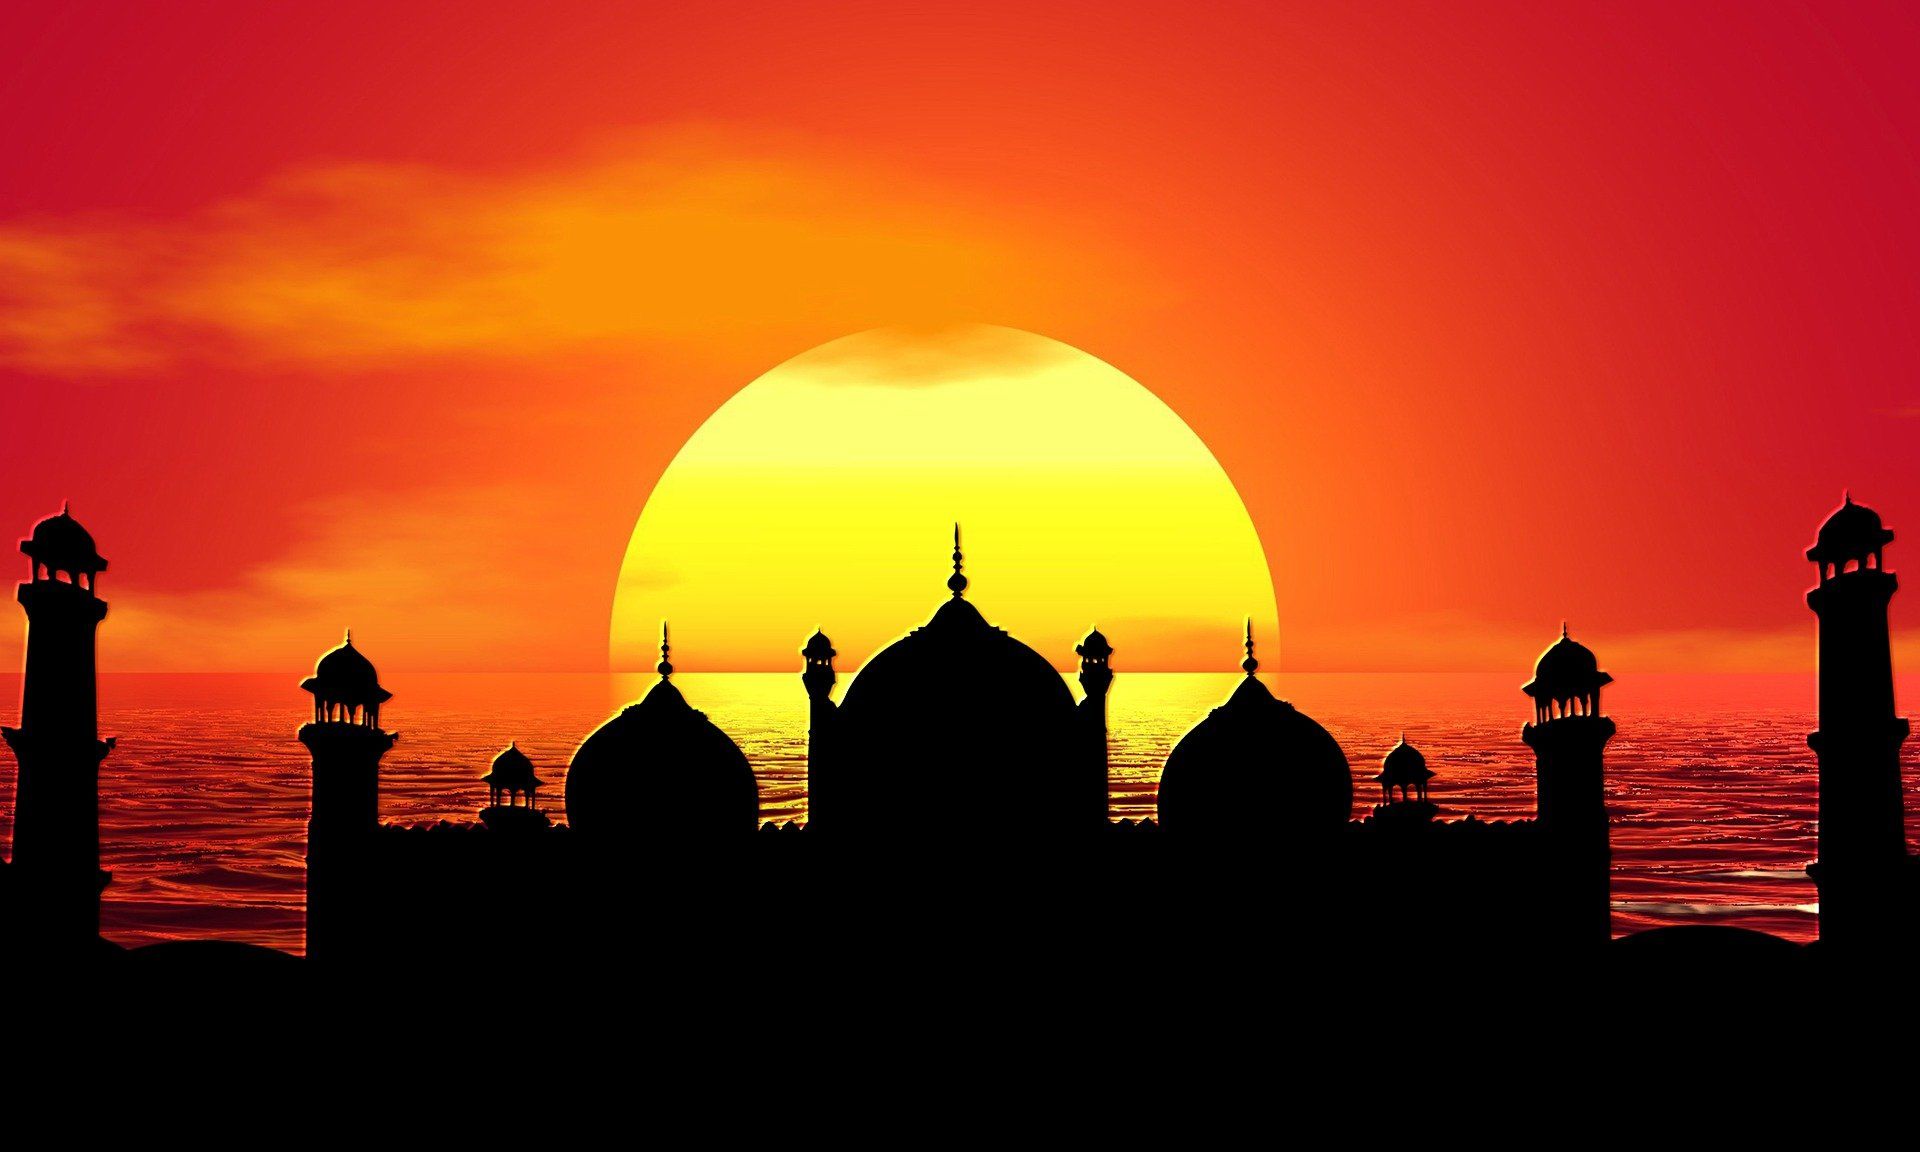 Simak Deretan Ucapan Lucu Selamat Ramadhan 2021 Cocok untuk Update di